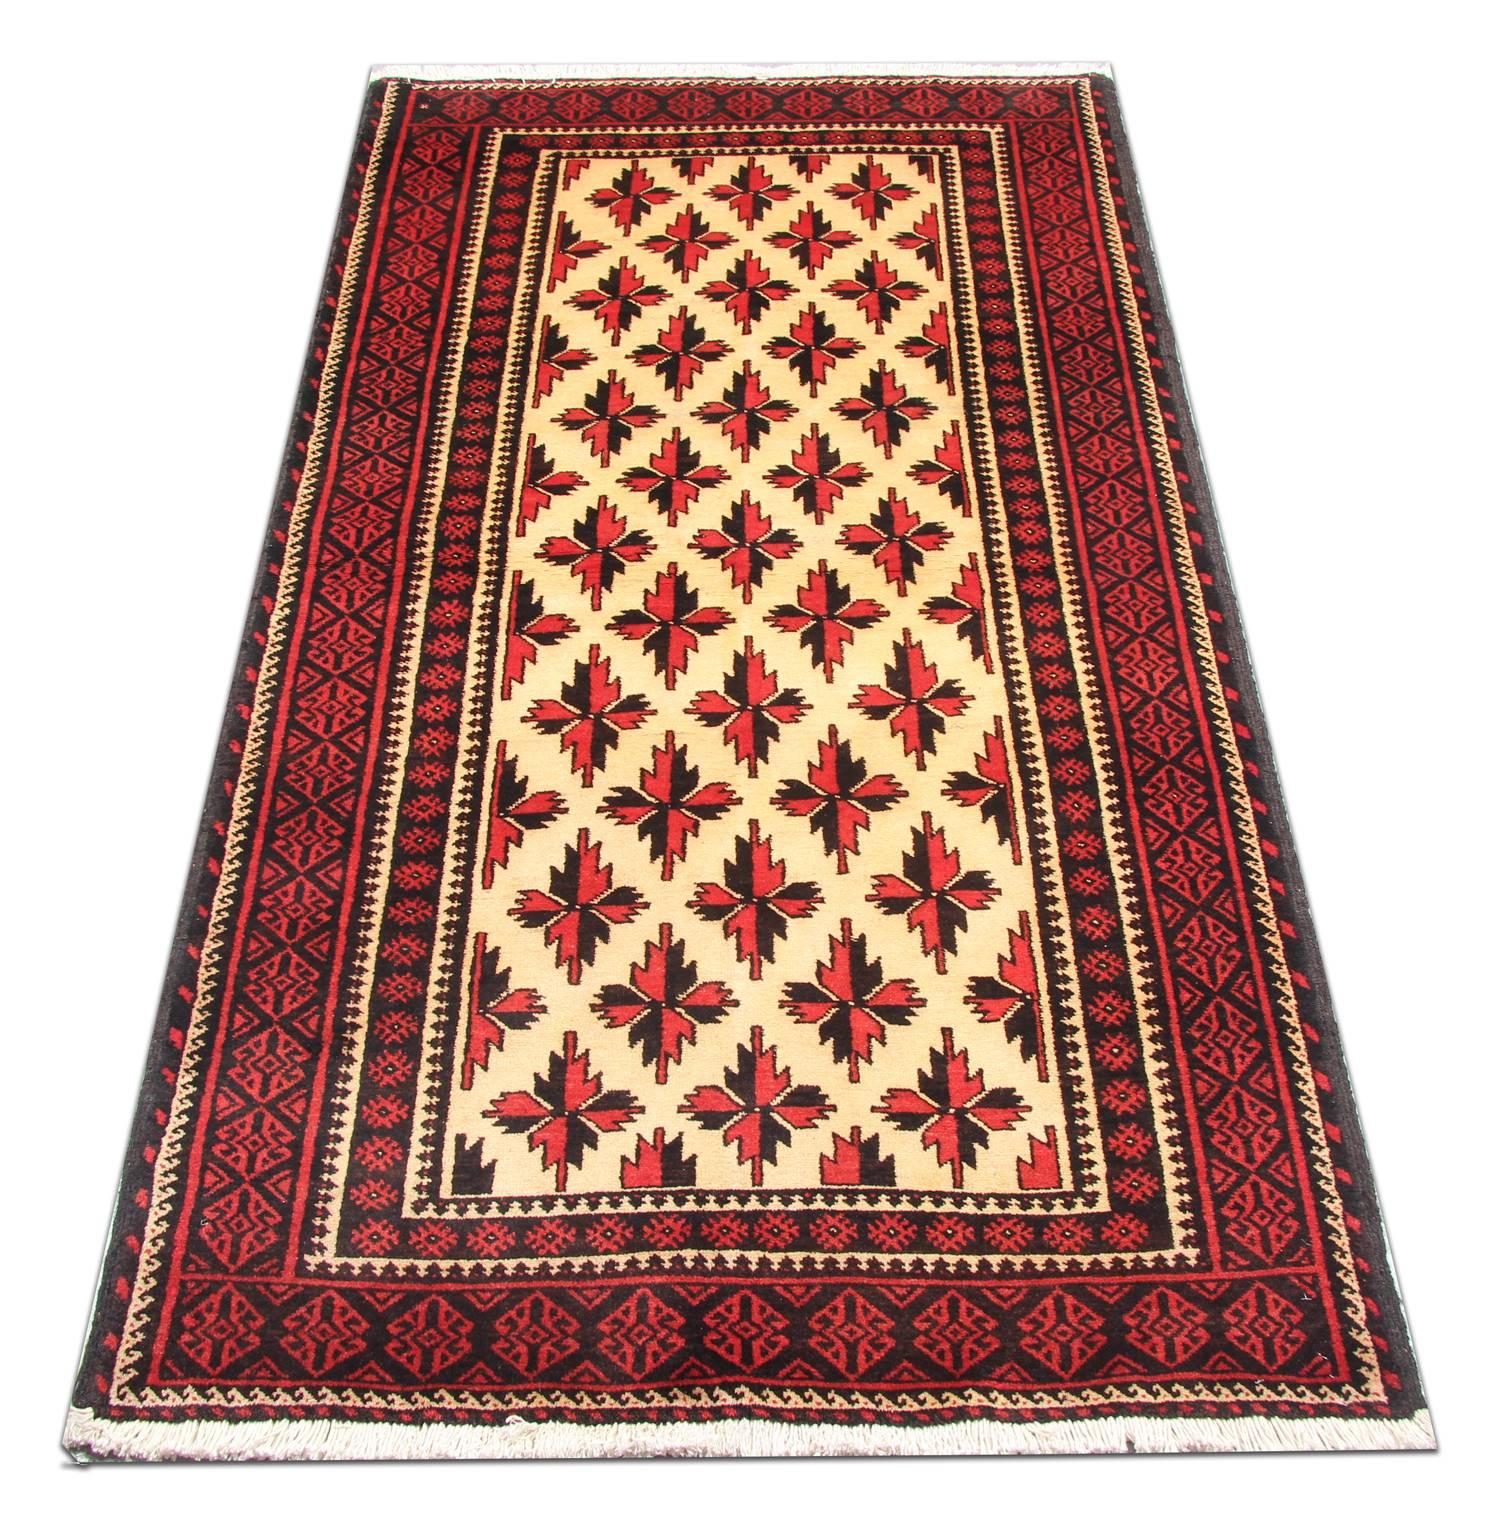 Dieser elegante Teppich wurde von Hand gewebt und zeichnet sich durch ein fantastisches Rapportmuster aus, das in Rot und Schwarz auf einem elfenbeinfarbenen Feld gewebt wurde. Dieses wird dann von einem sehr detaillierten Rapportmuster in Rot und